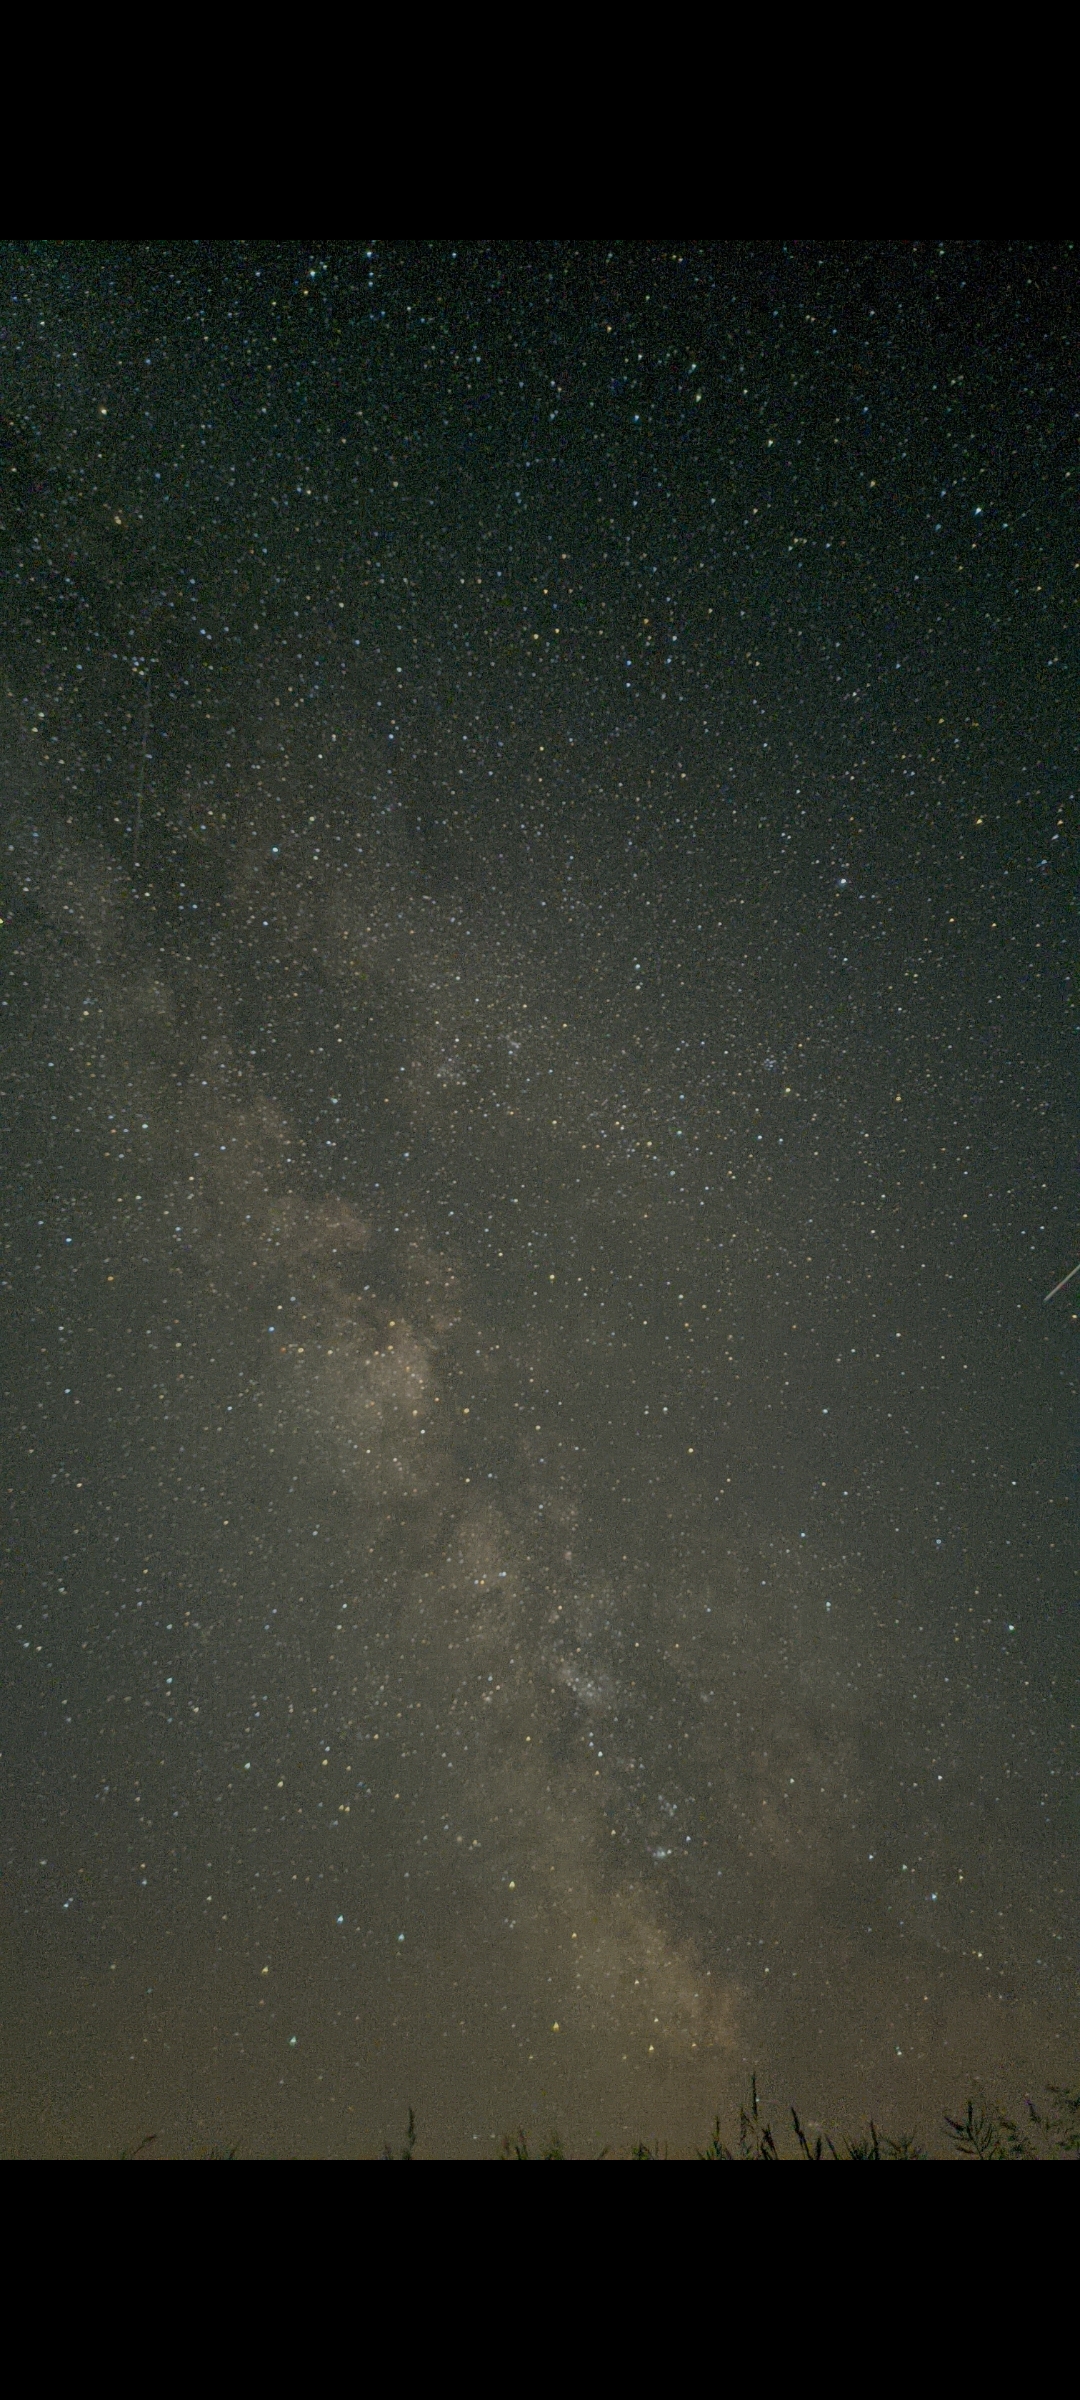 Mein erstes Smartphonefoto der Milchstraße